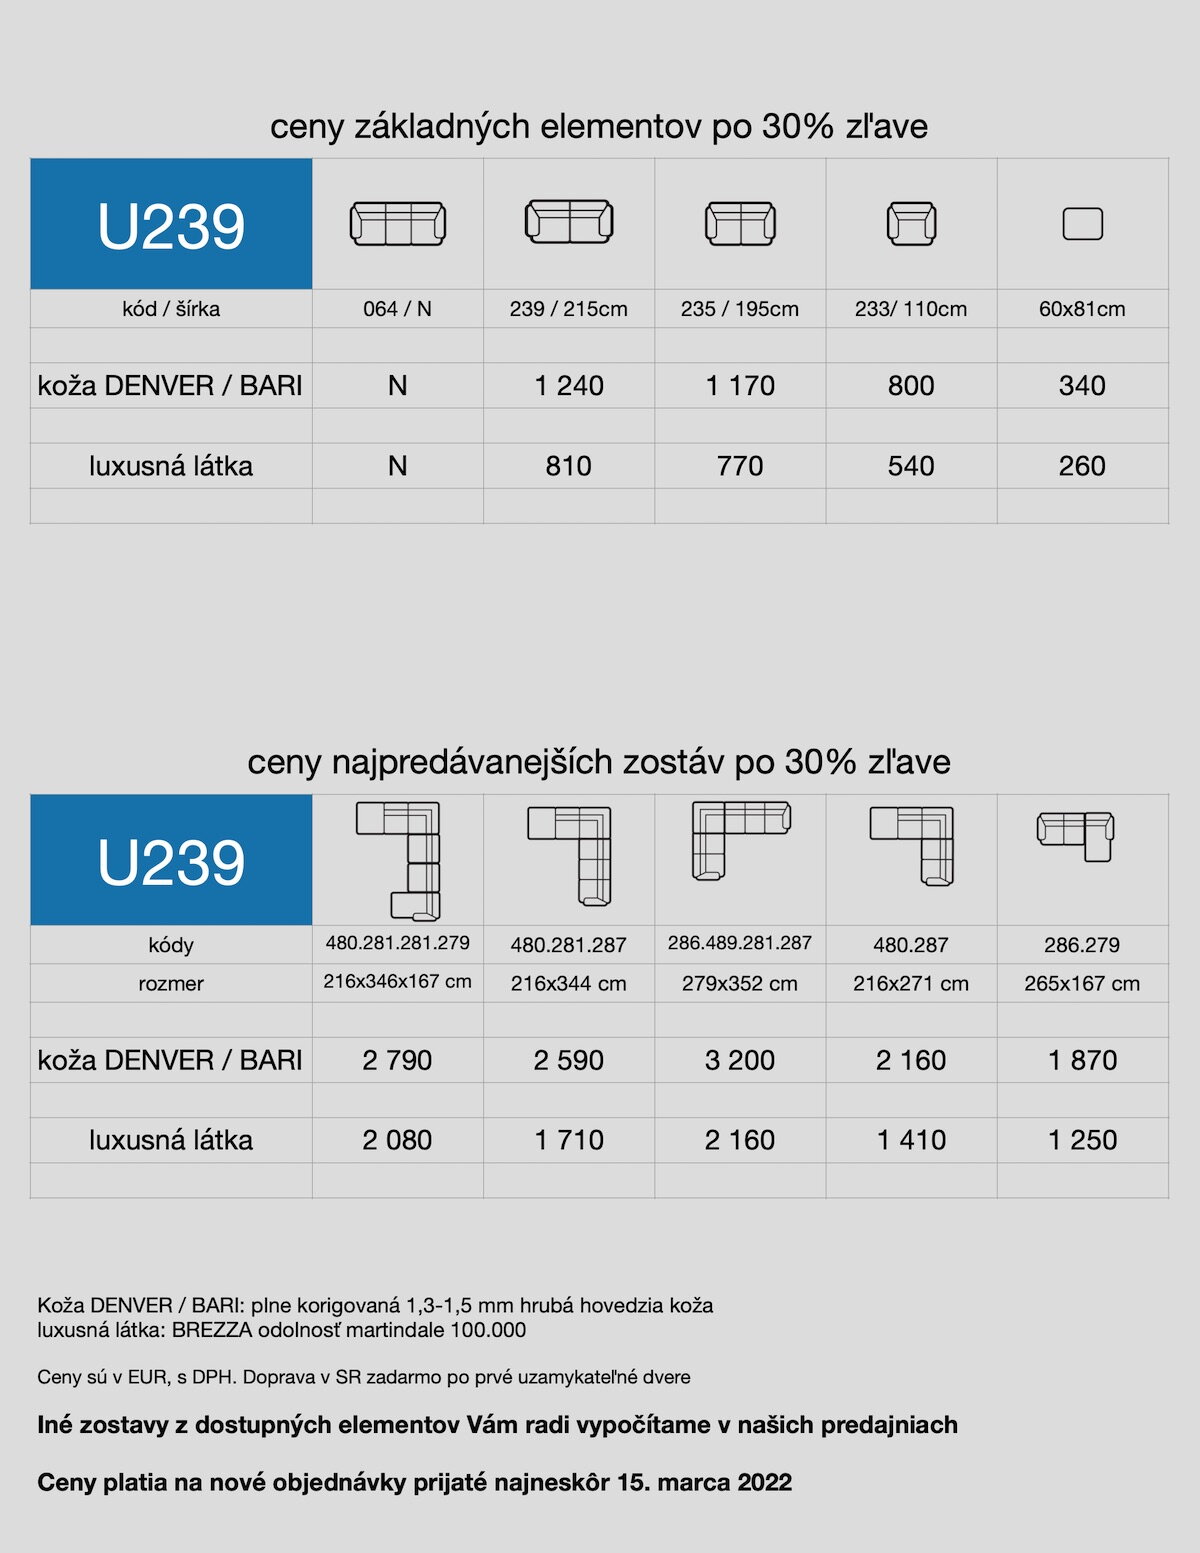 akciový ceník sedačky U239